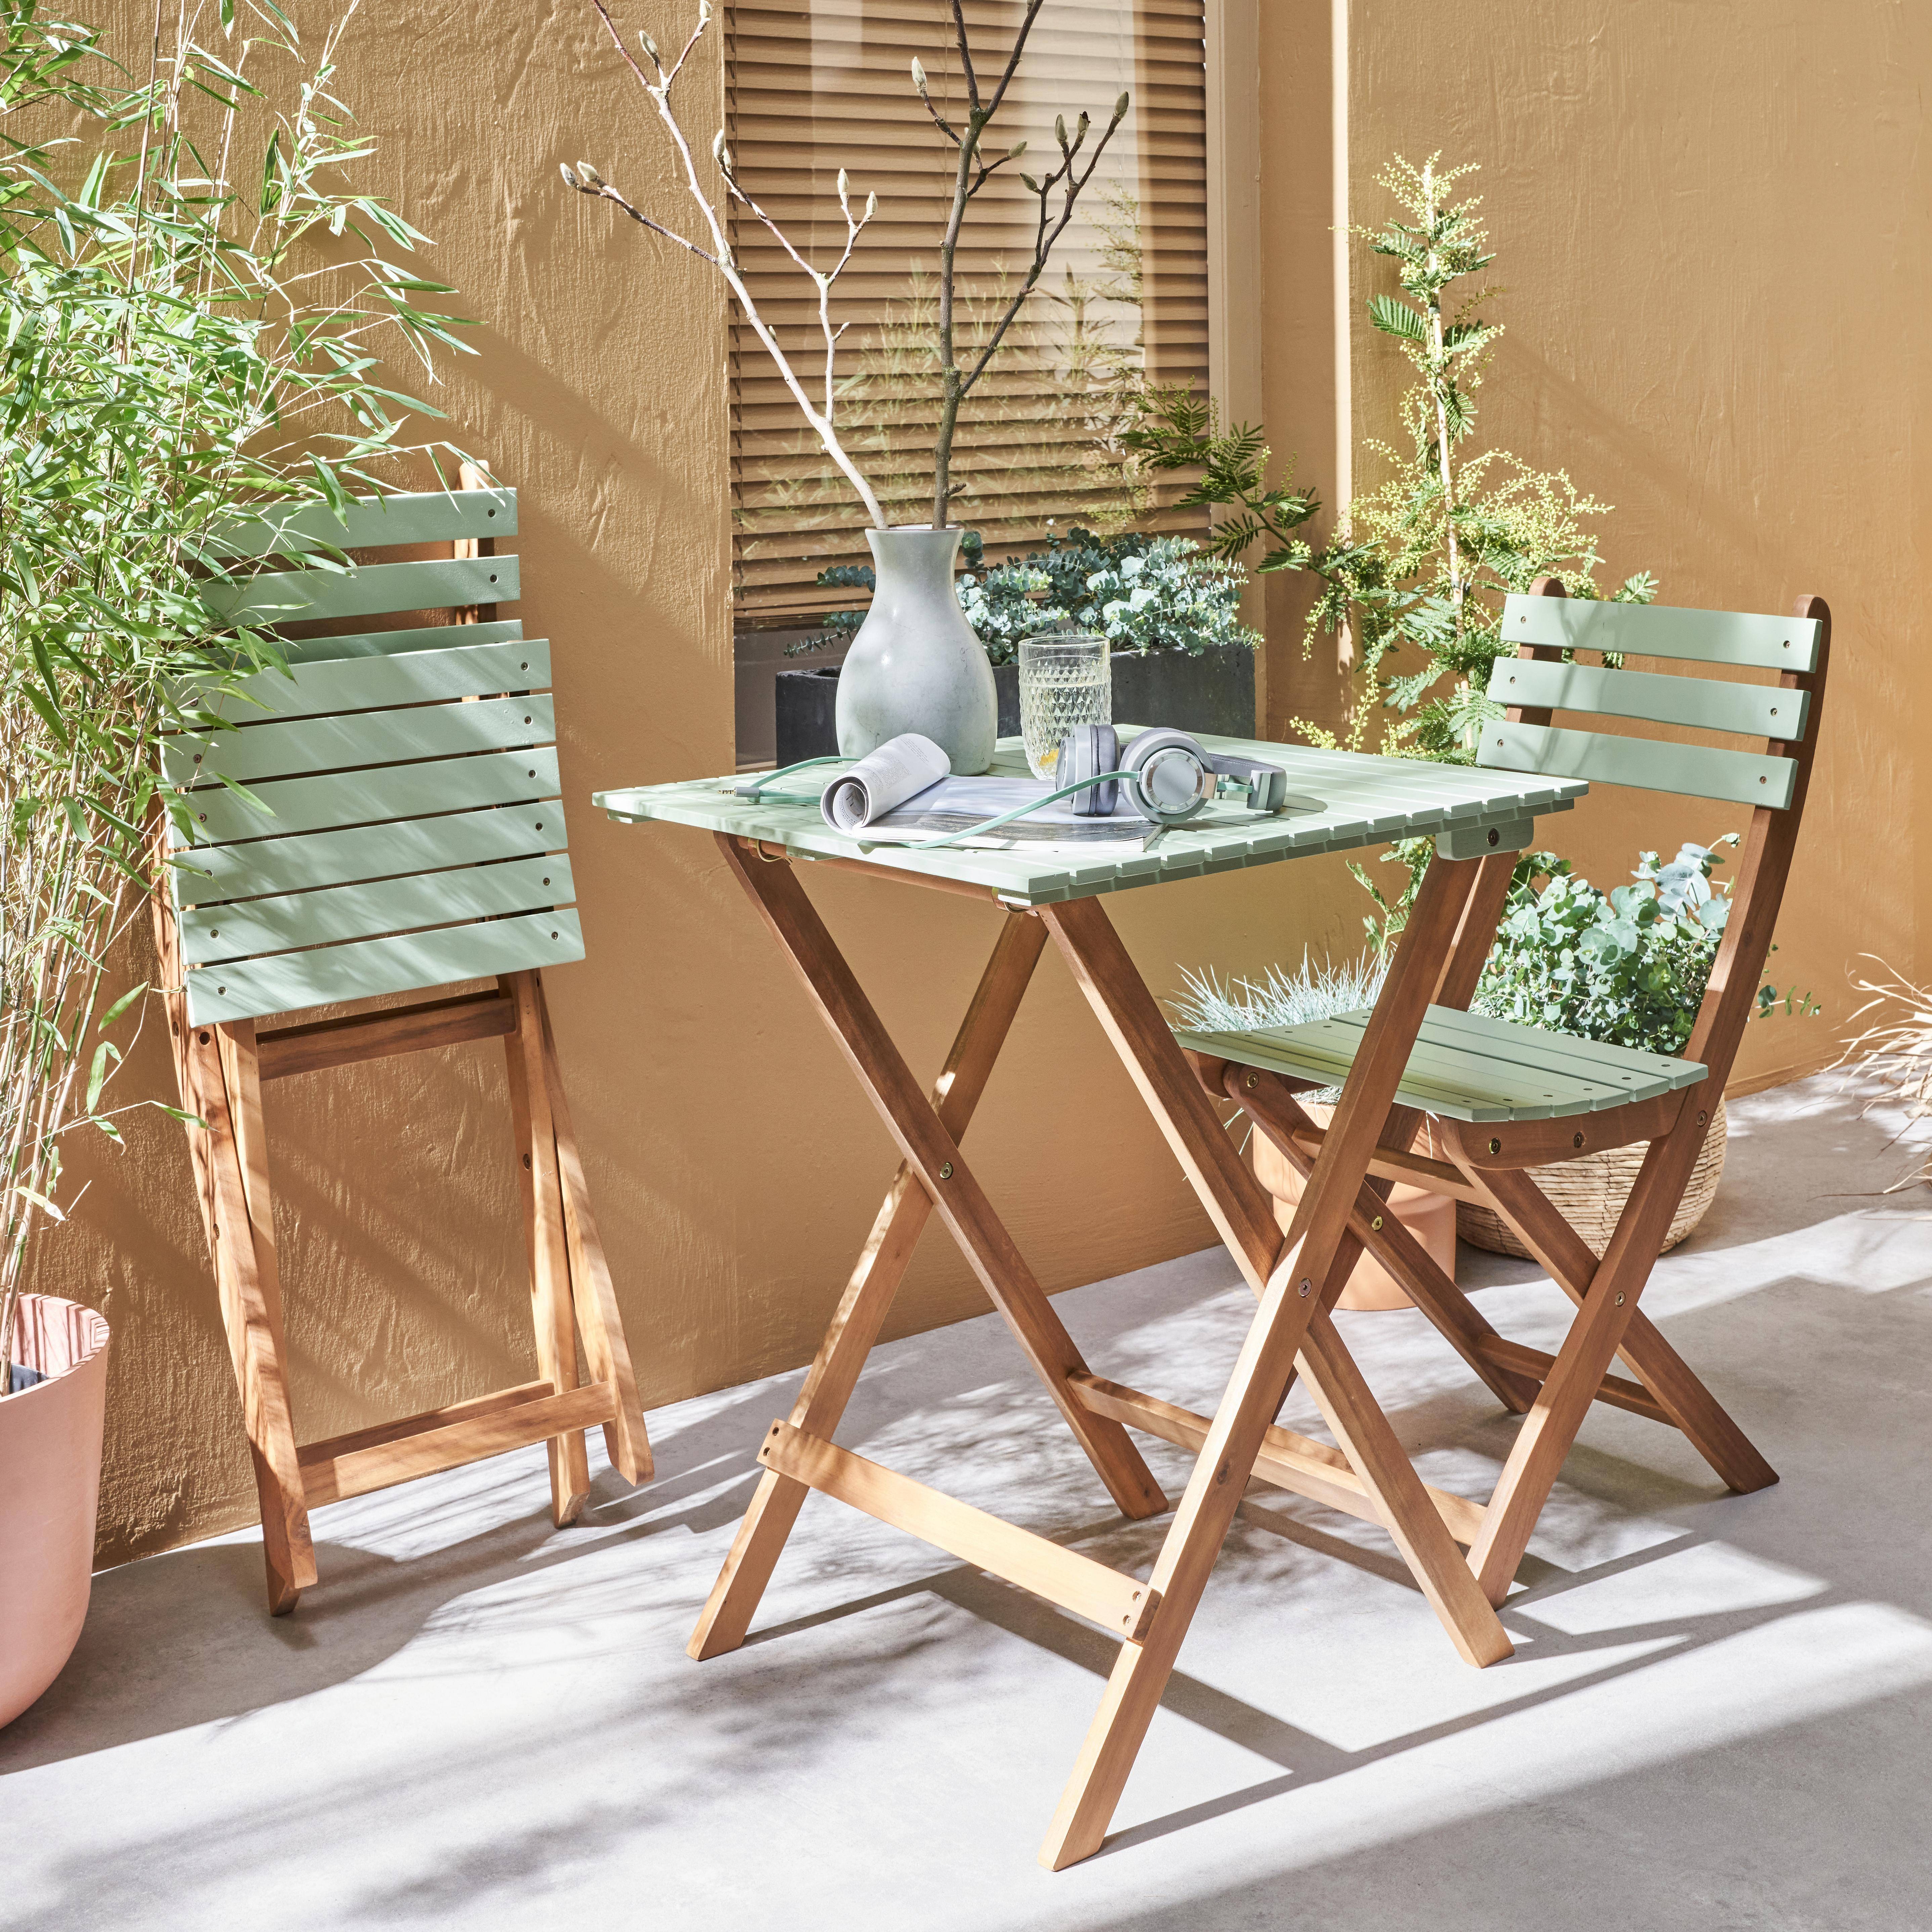 Conjunto de jardín de madera Bistro 60x60cm - Barcelona - verde grisáceo, mesa  plegable bicolor con 2 sillas plegables, acacia